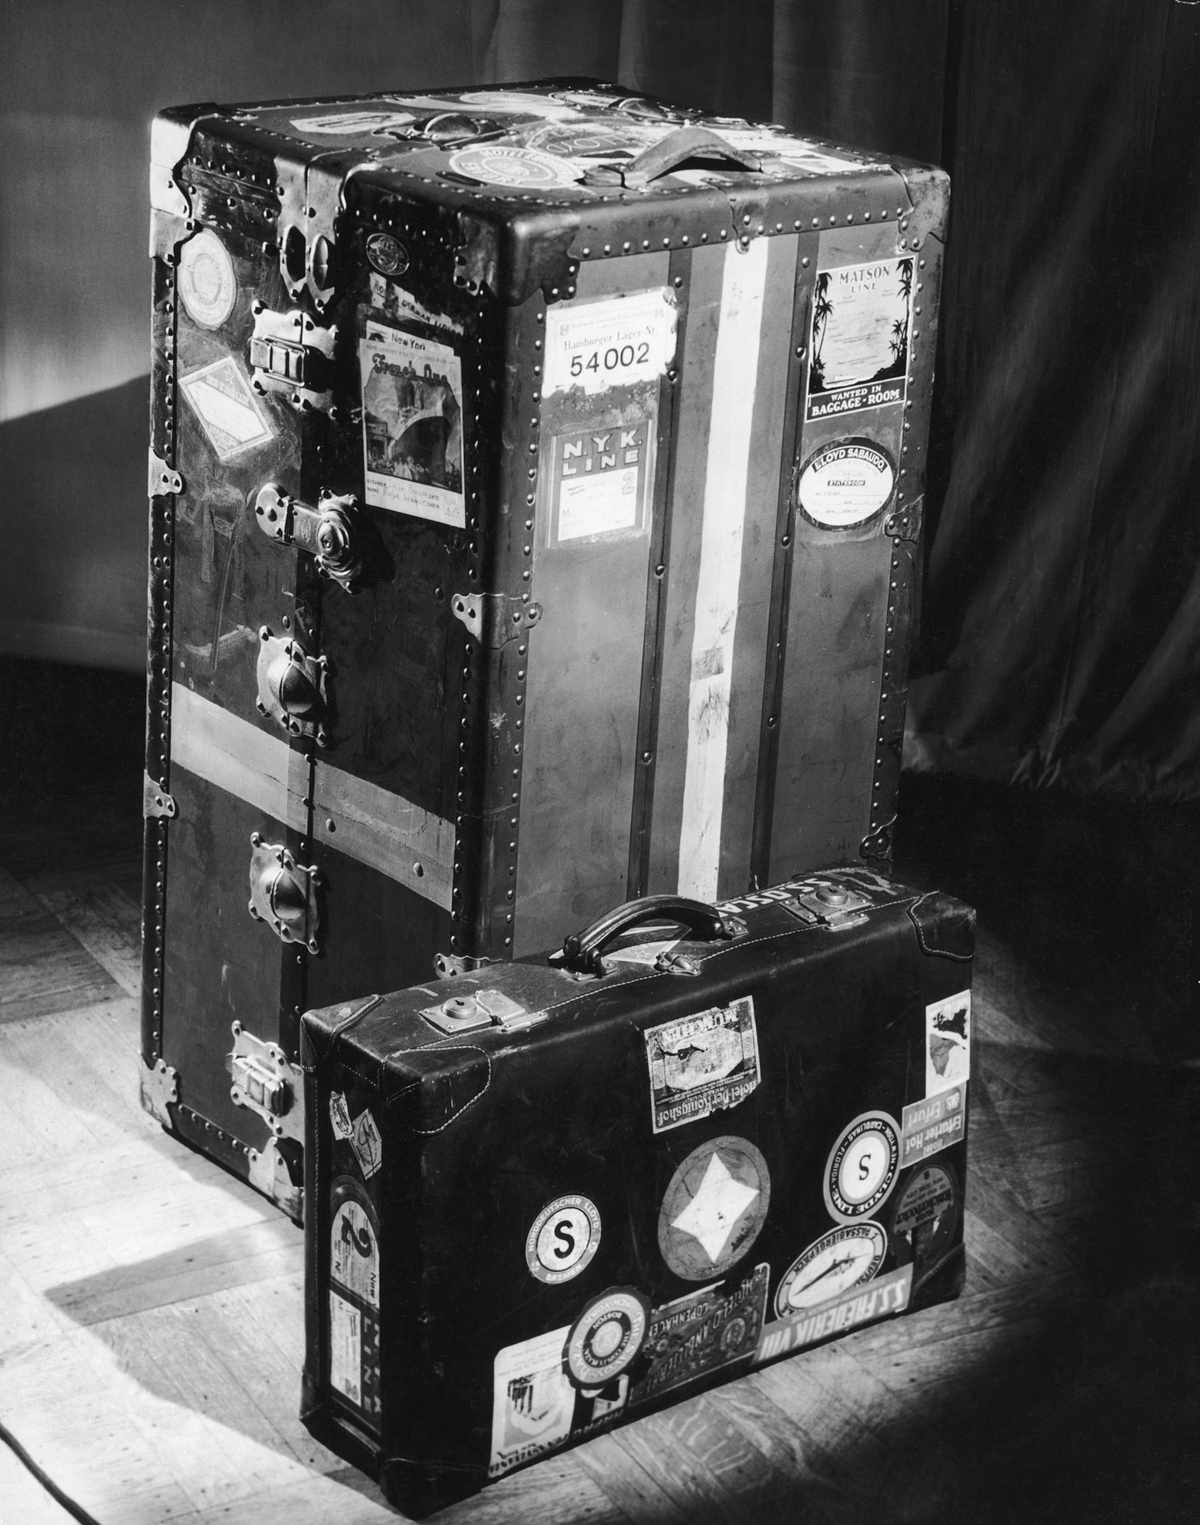 Vintage trunk luggage